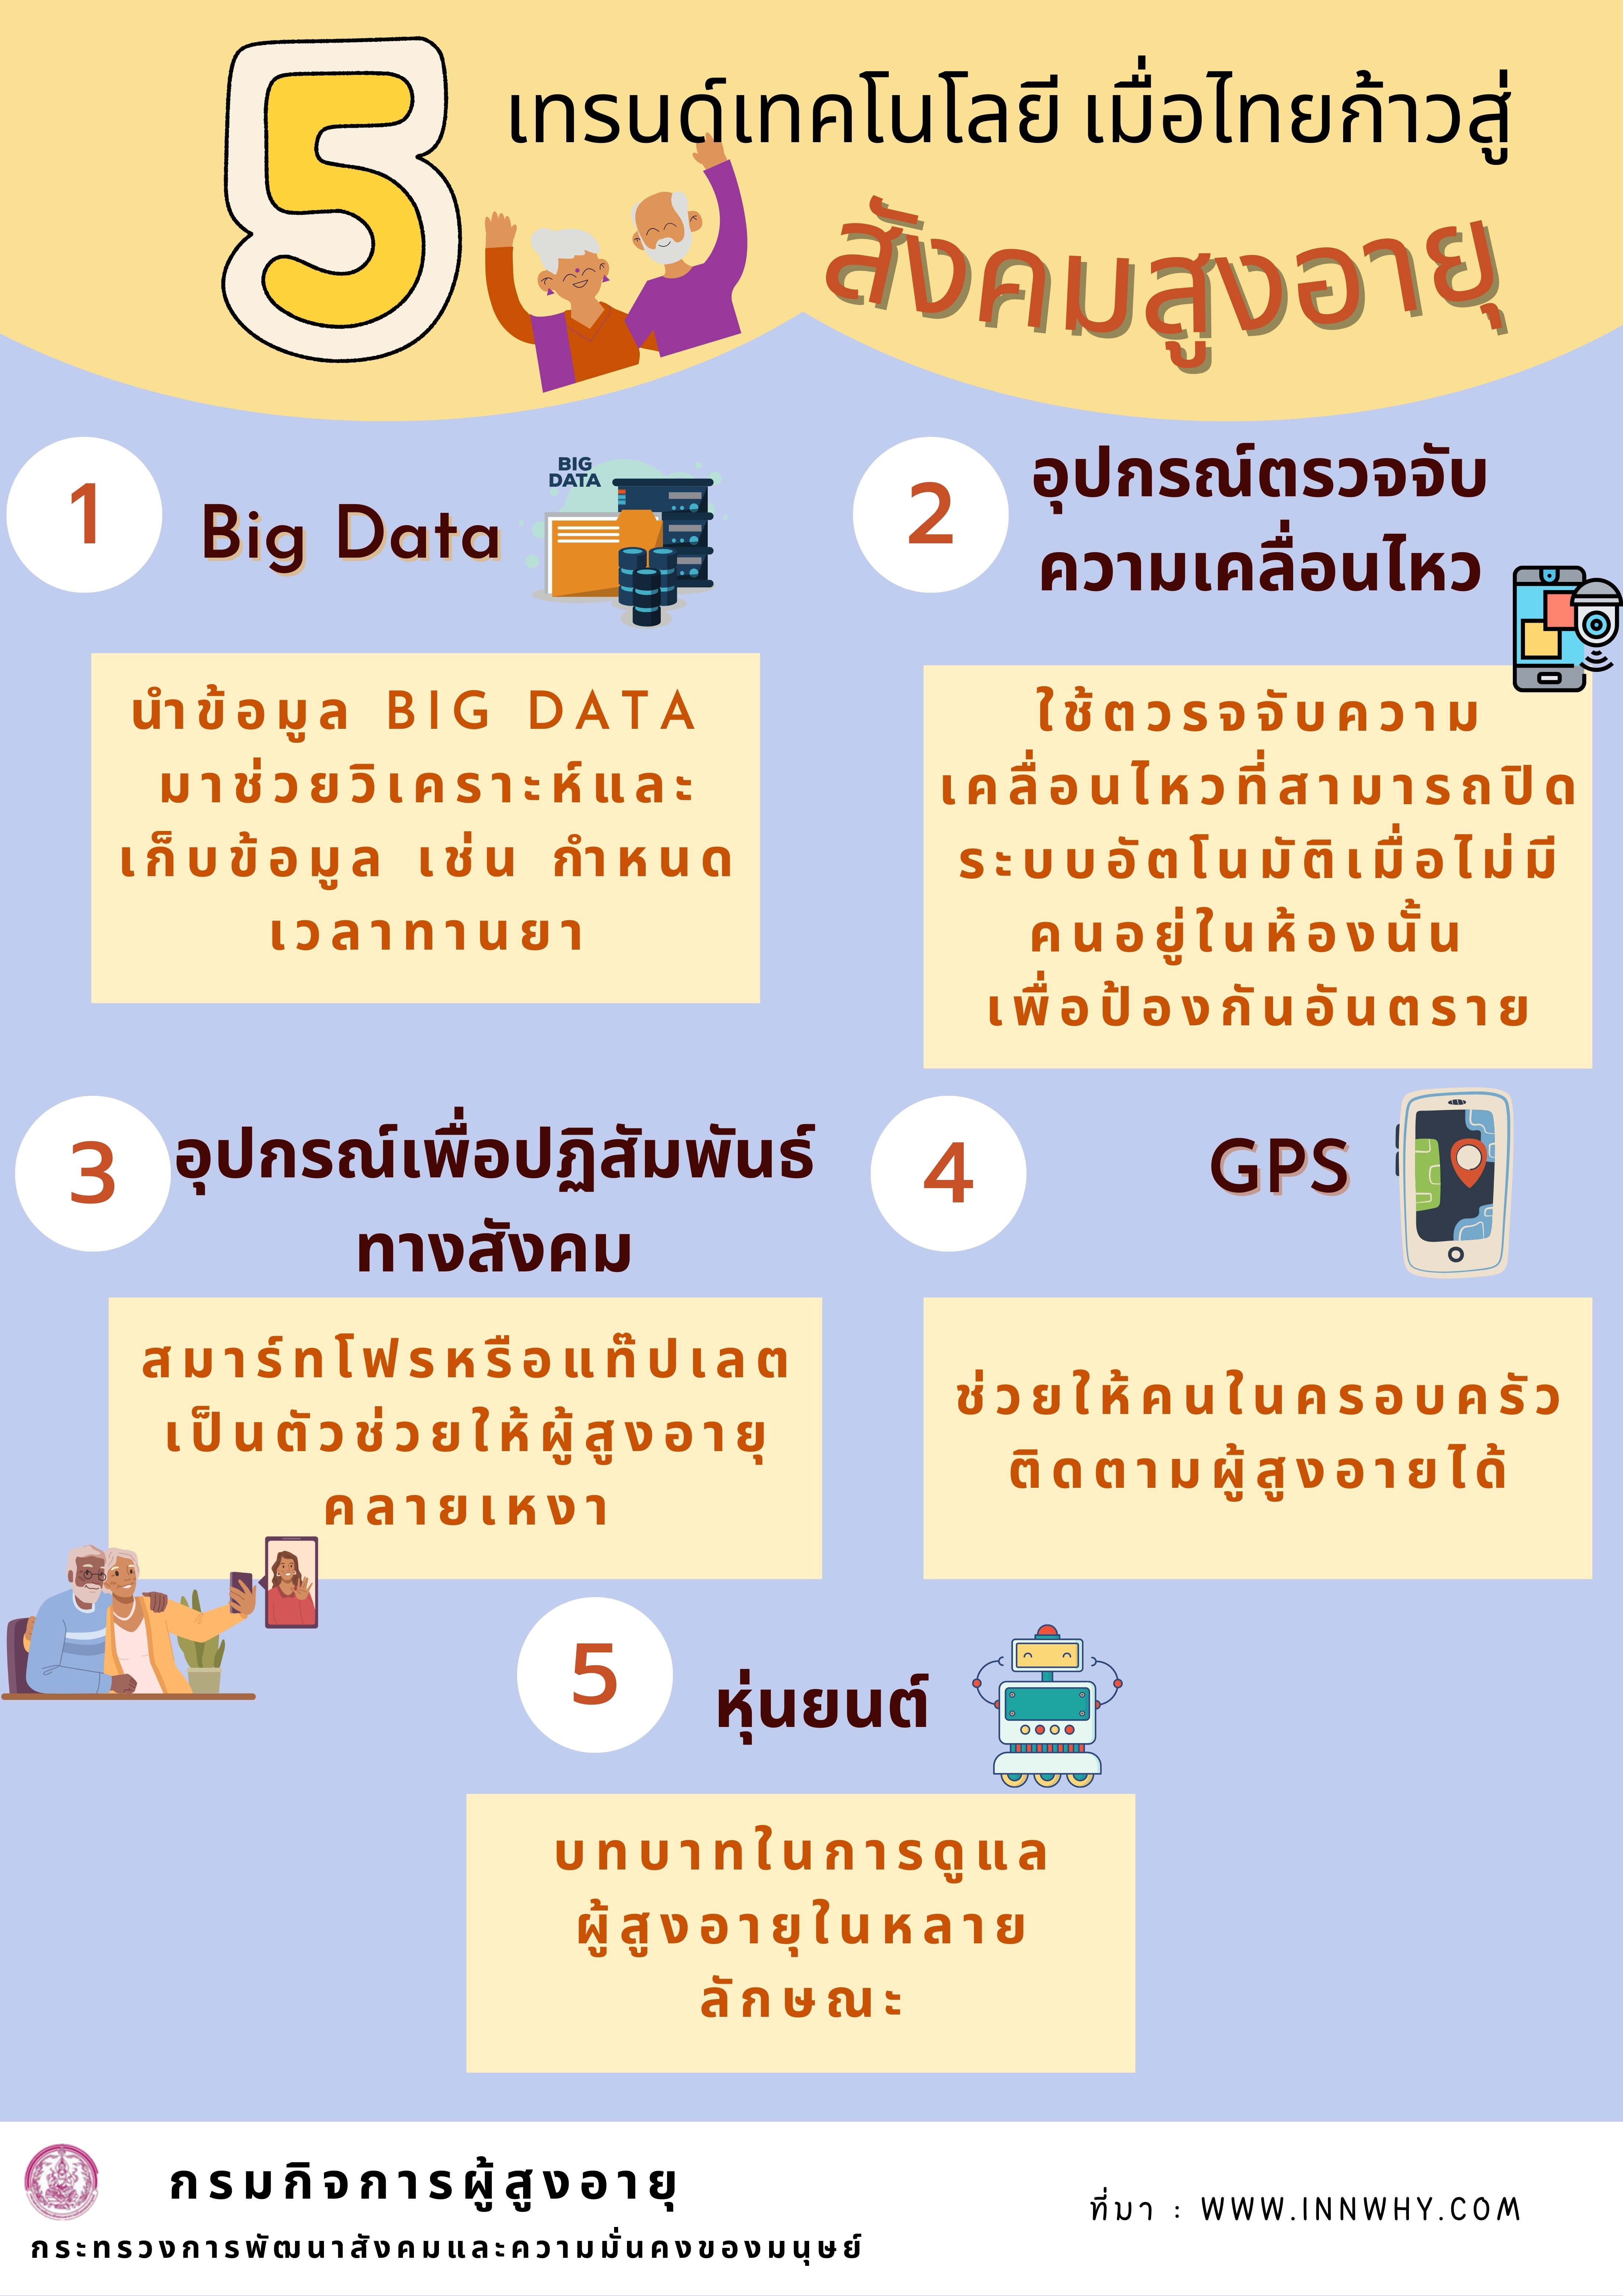 5 เทรนด์เทคโนโลยี เมื่อไทยก้าวสู่สังคมสูงอายุ